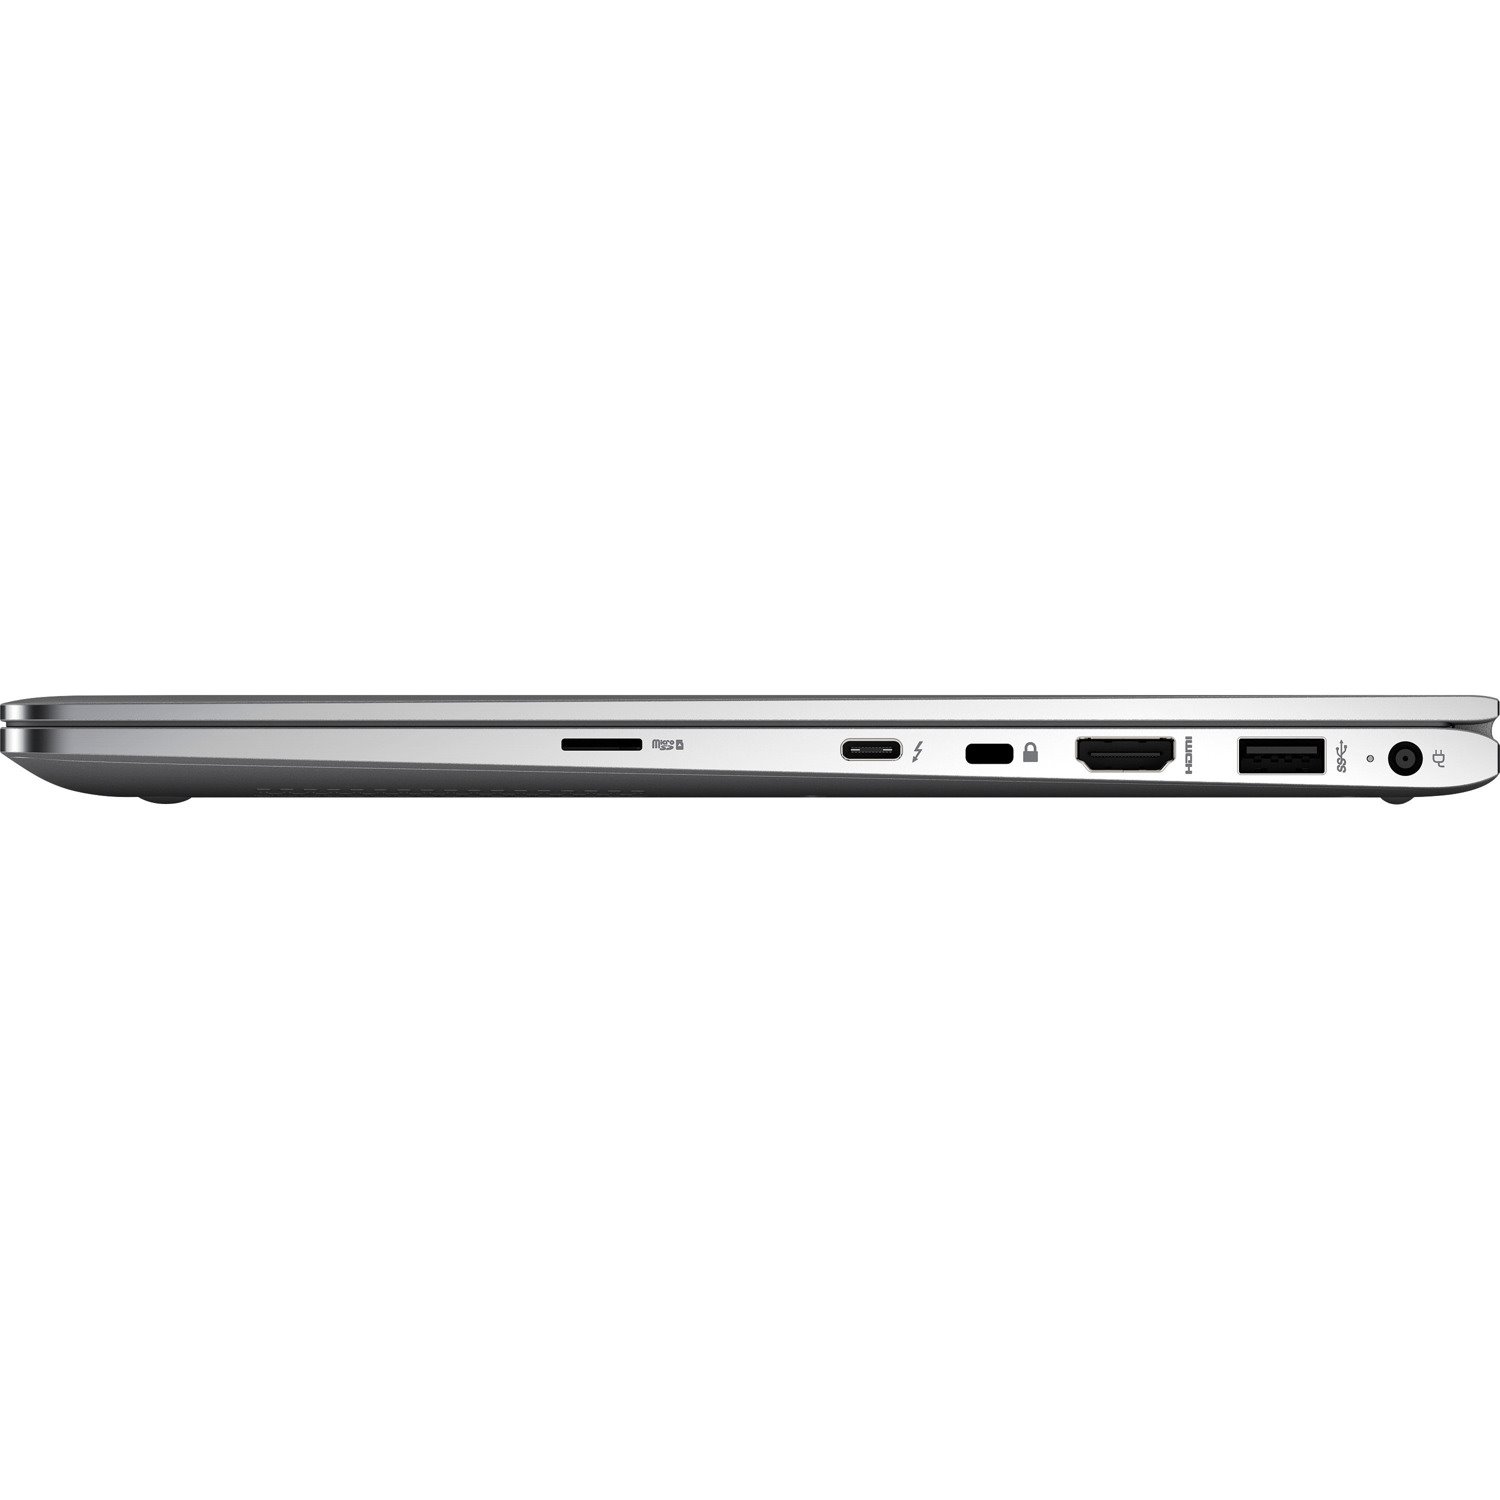 HP EliteBook x360 1030 G4 13.3" Touchscreen Convertible 2 in 1 Notebook - 1920 x 1080 - Intel Core i5 8th Gen i5-8265U Quad-core (4 Core) 1.60 GHz - 8 GB Total RAM - 256 GB SSD